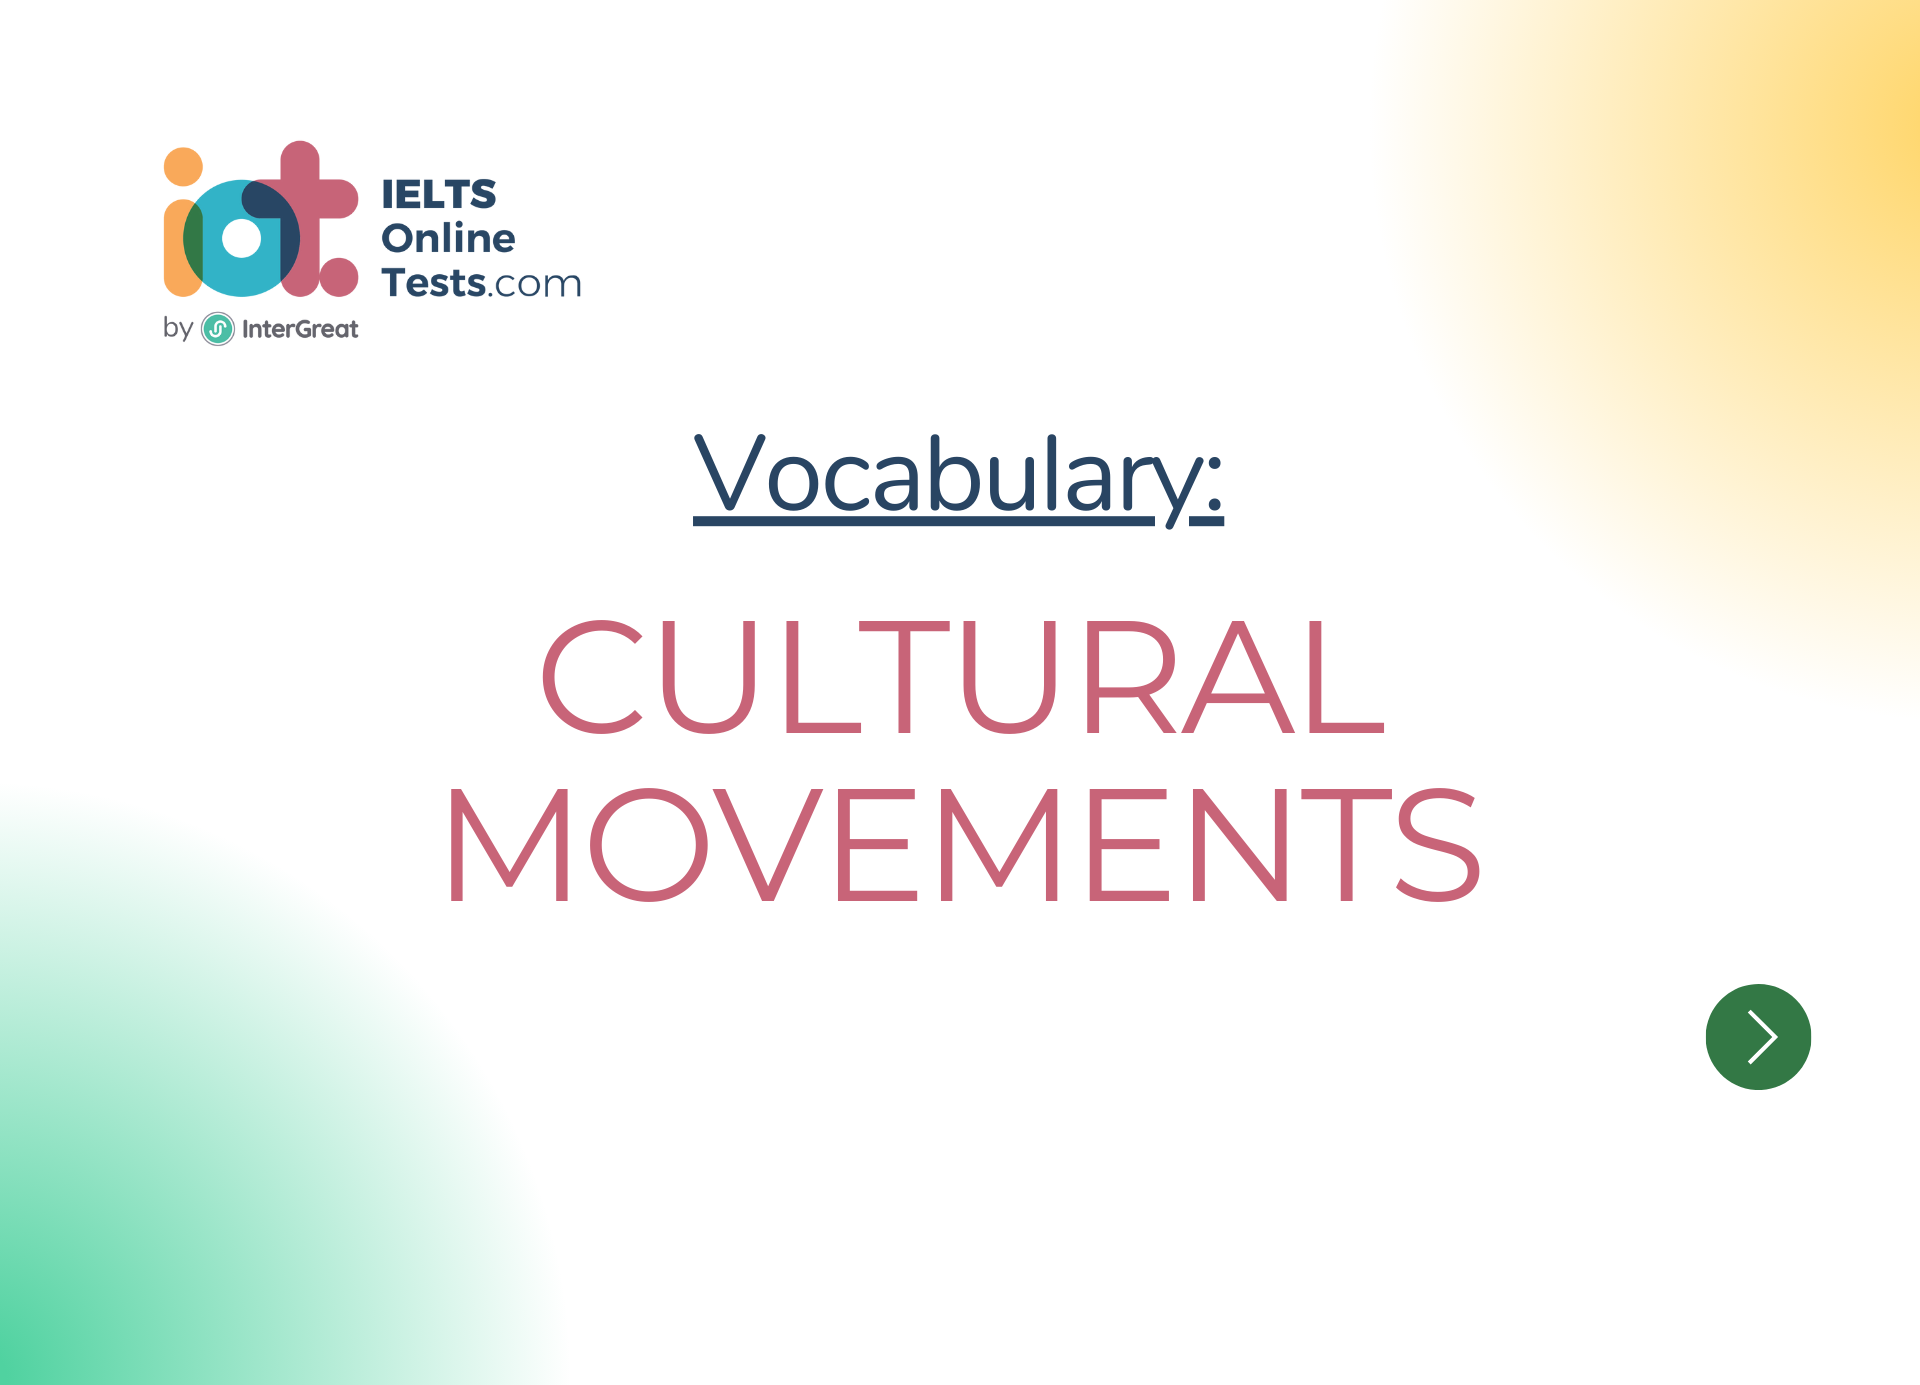 Cultural movements